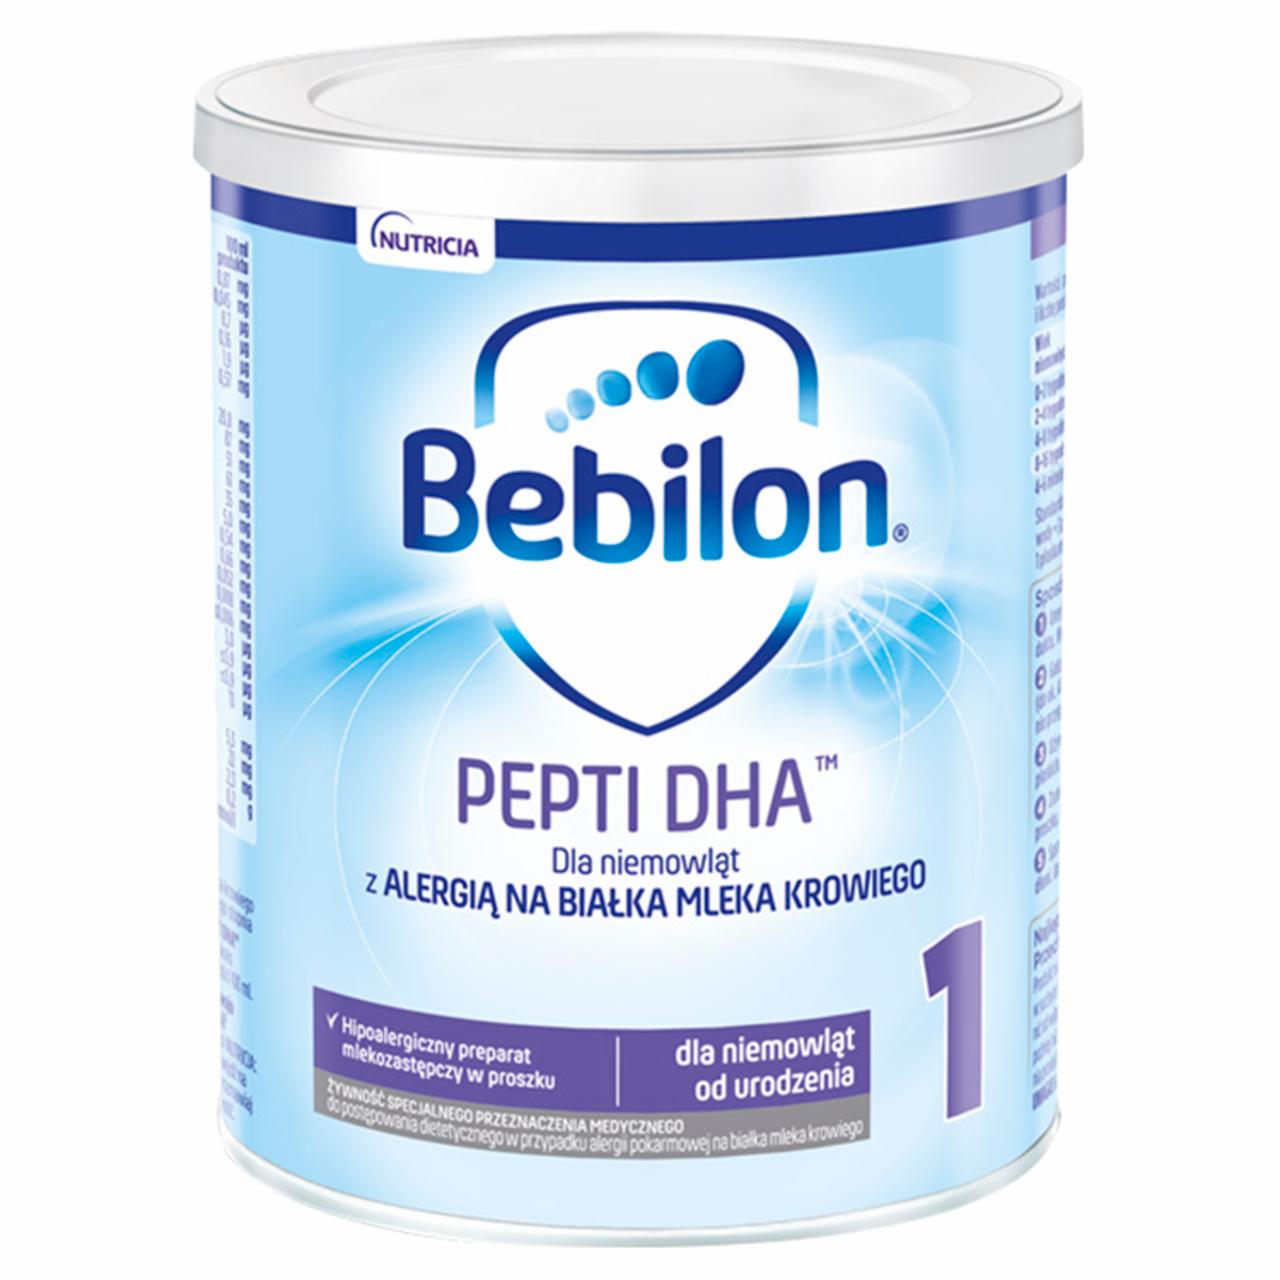 Zdjęcia - Bebilon pepti 1 DHA Żywność specjalnego przeznaczenia medycznego 400 g